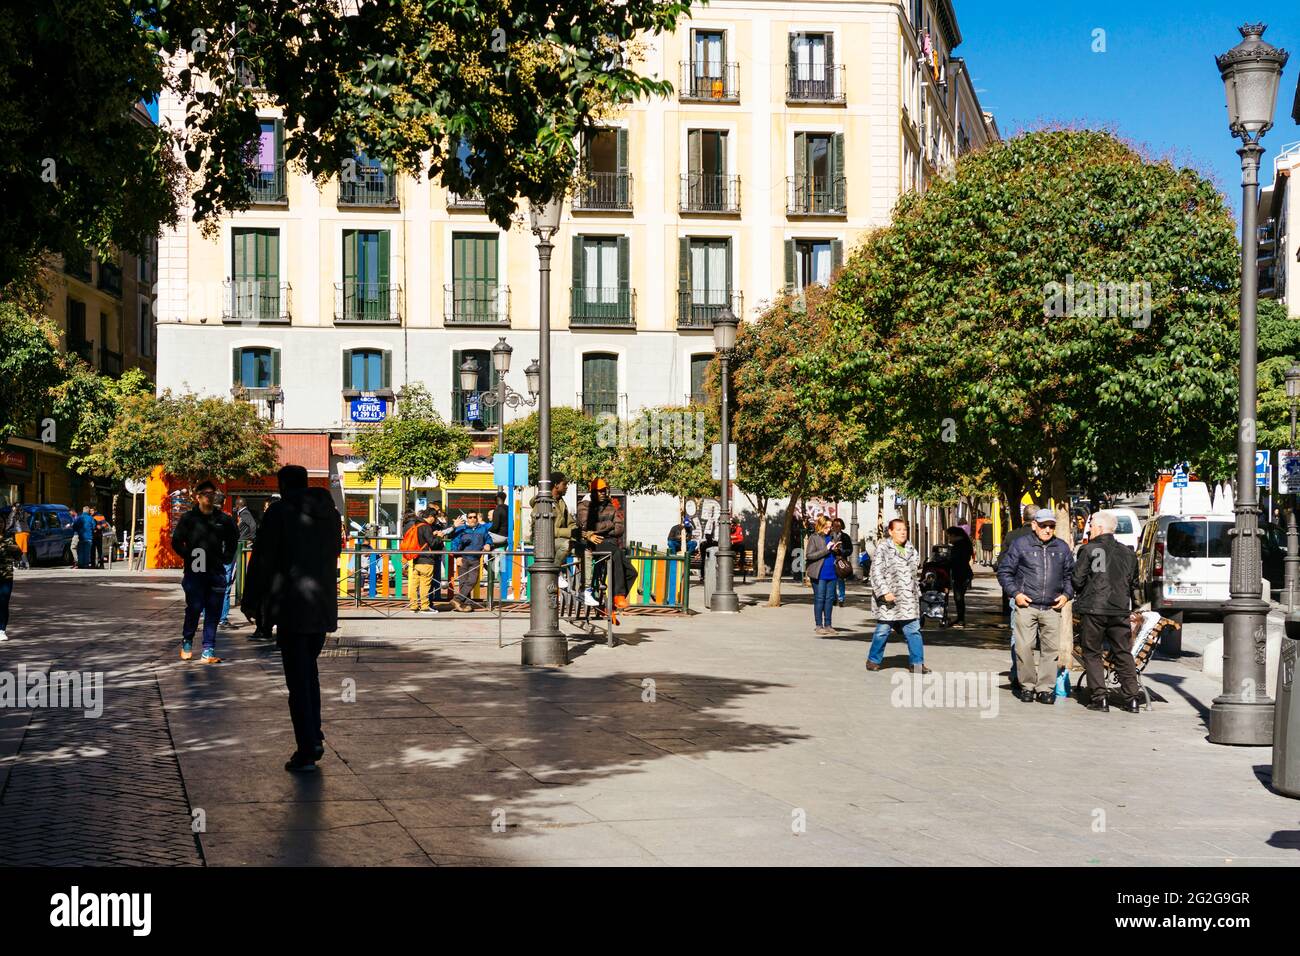 Plaza de Lavapiés - Piazza Lavapies. Il quartiere turistico di Lavapiés si trova nella parte sud-orientale del centro di Madrid a forma di mandorle. Come nel vicinato Foto Stock